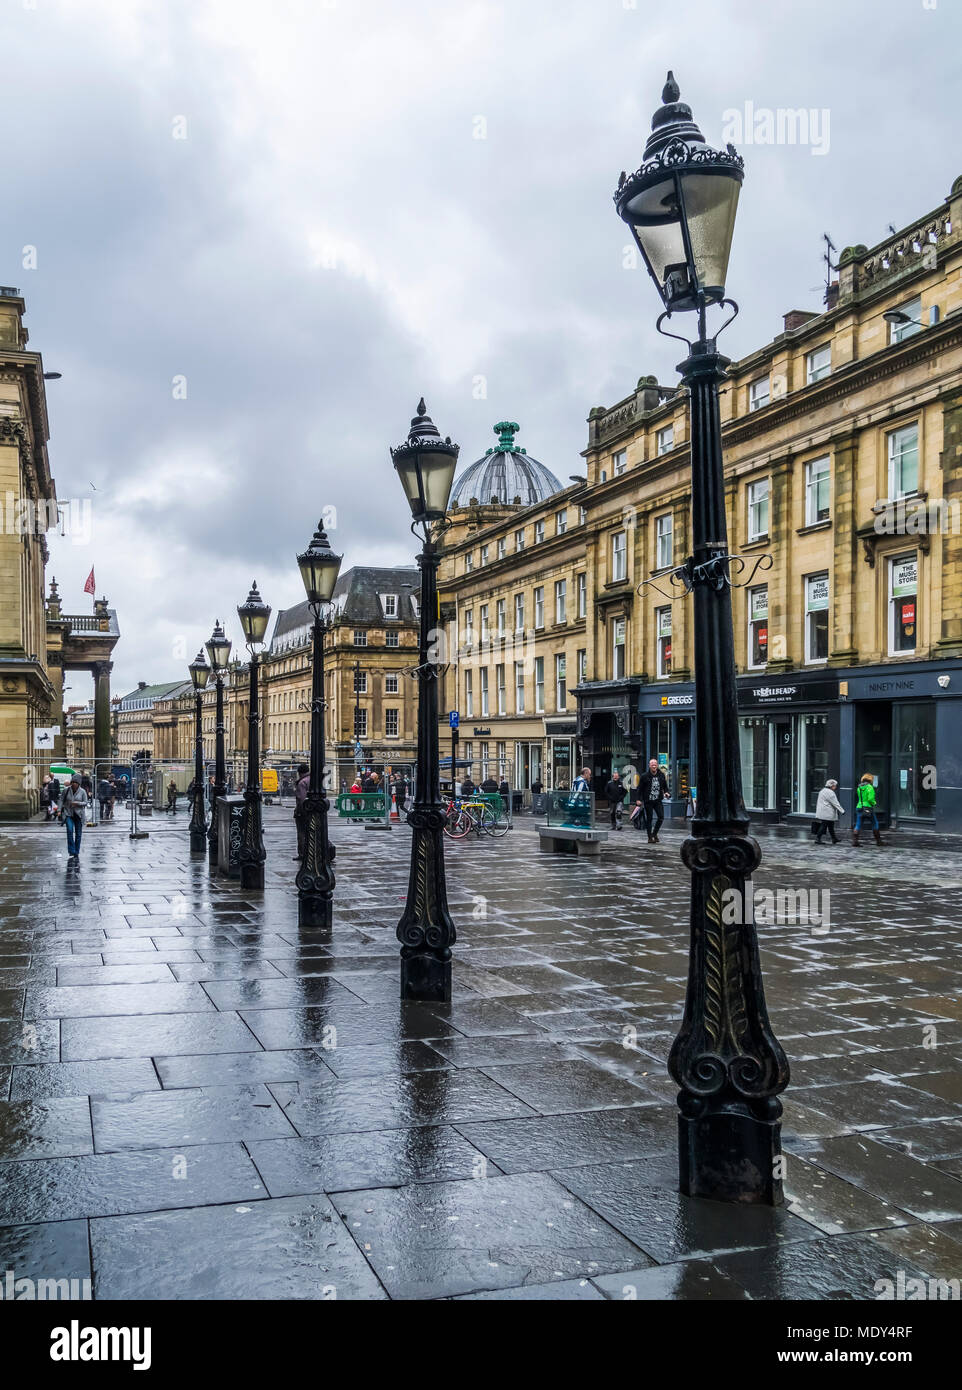 Dekorative lampe Beiträge in einer Reihe entlang einer nassen Straße mit Fußgängern und Geschäfte, Newcastle Upon Tyne, Tyne und Wear, England Stockfoto